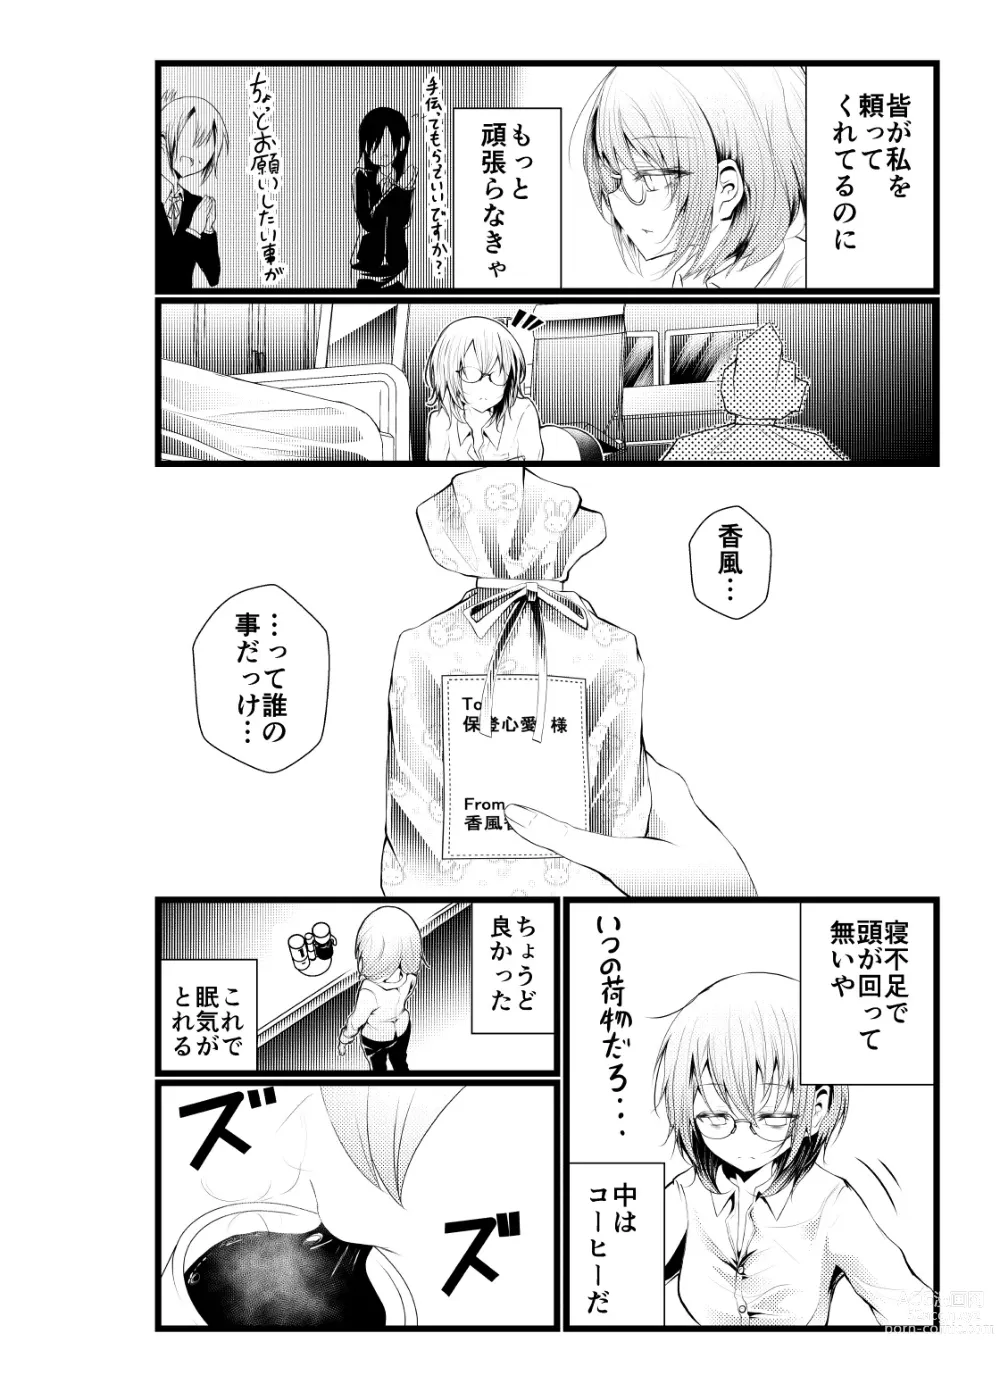 Page 2 of doujinshi Shachiku ni Natta Kokoa-chan ga Kigumi no Machi ni Kaeru Manga